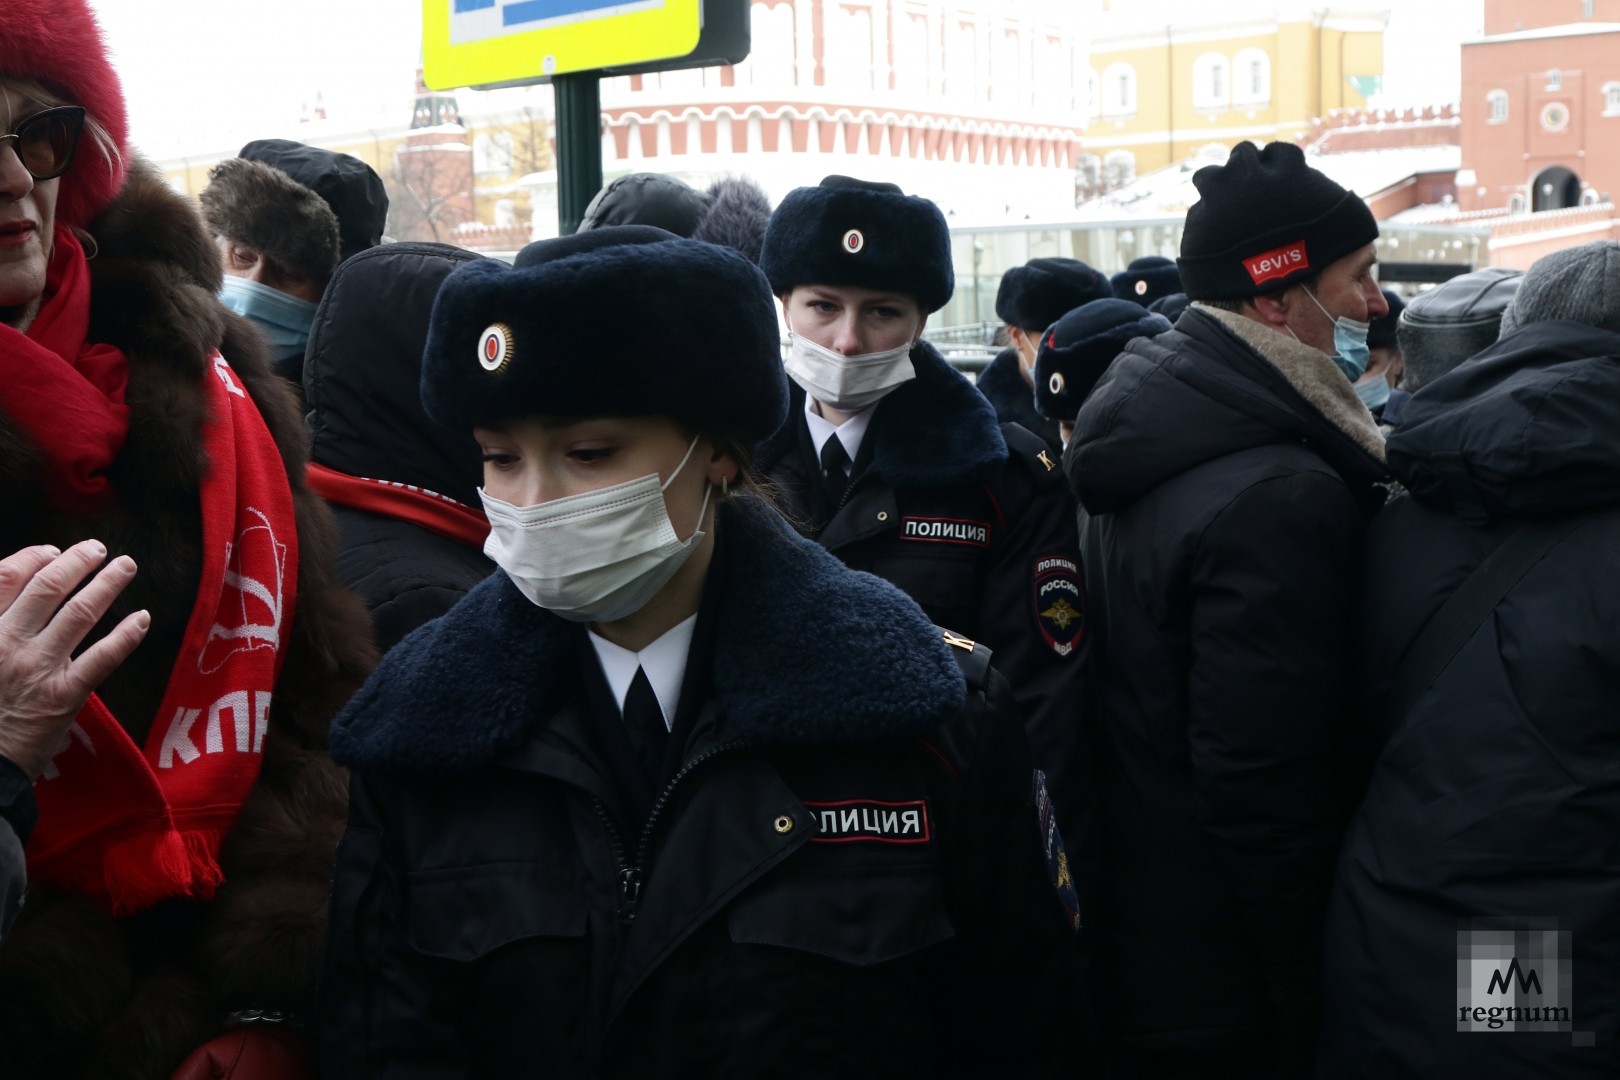 Москва митинга 23. Полицейские на митинге в Москве. КПРФ митинг 23 февраля. Девушки полицейские на митинге.